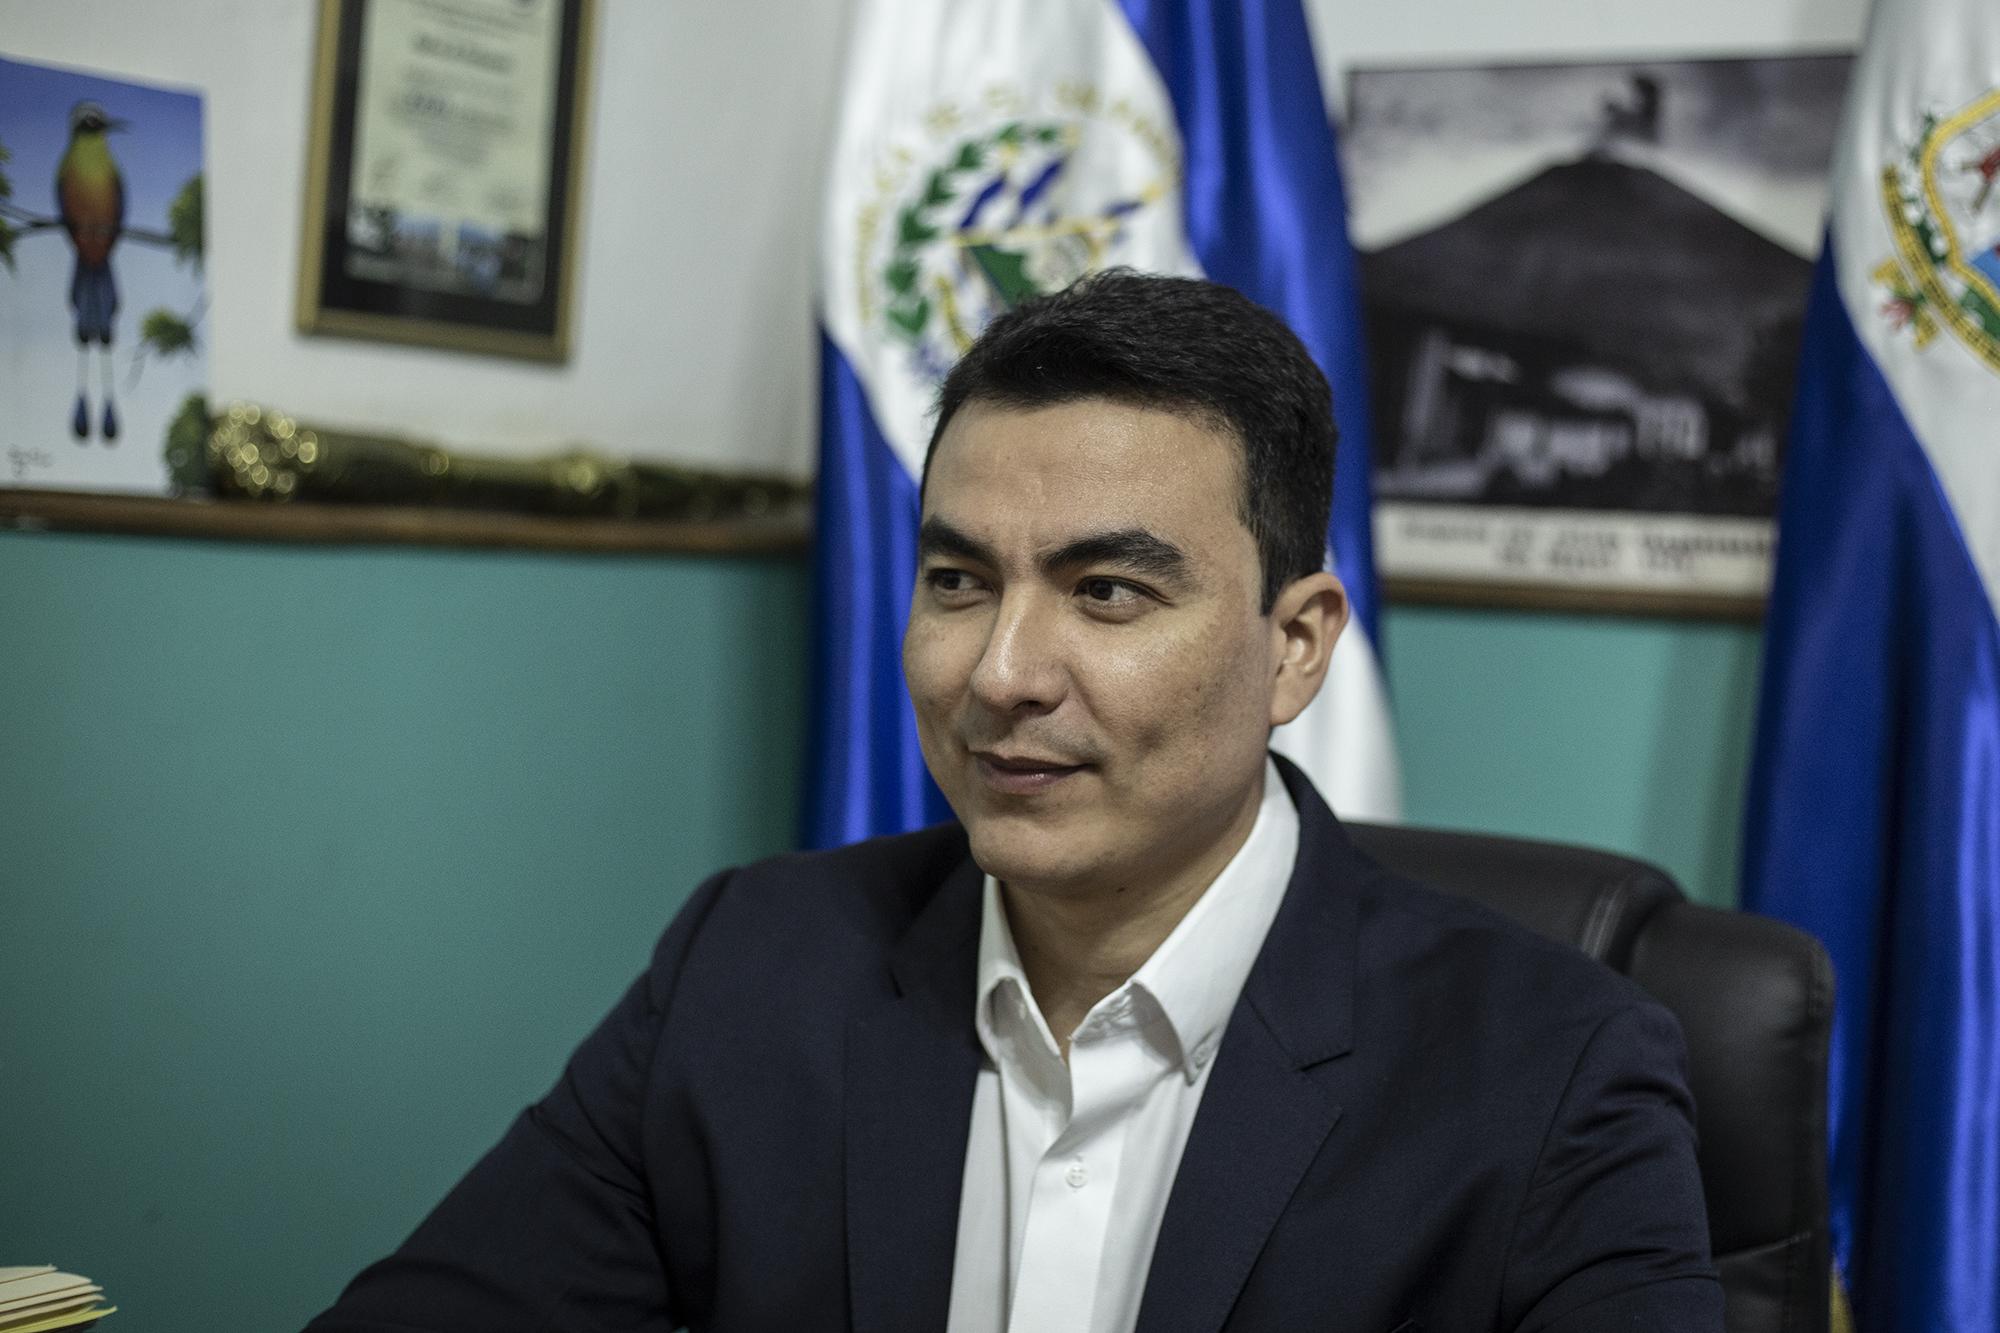 El alcalde Miguel Pereira durante una entrevista a El Faro en el despacho municipal de San Miguel. Foto: Carlos Barrera